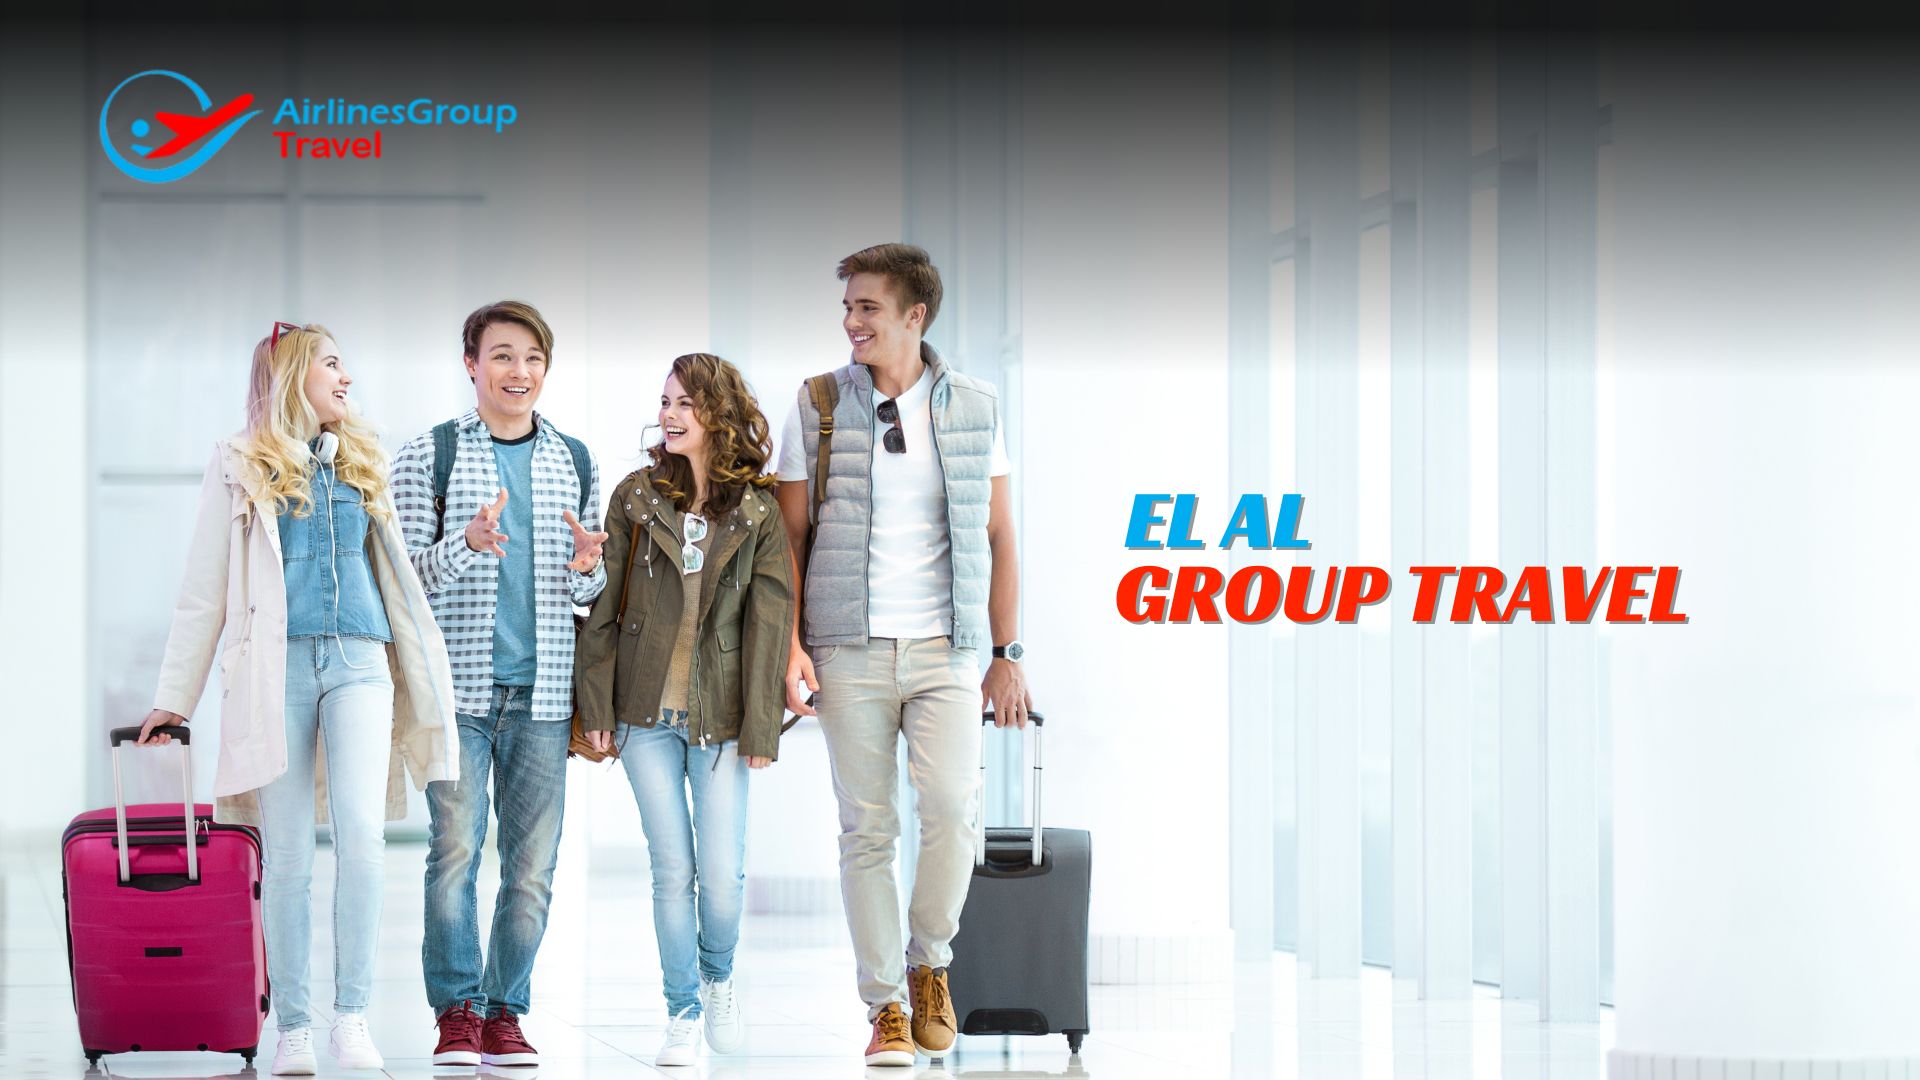 EL AL Group Booking